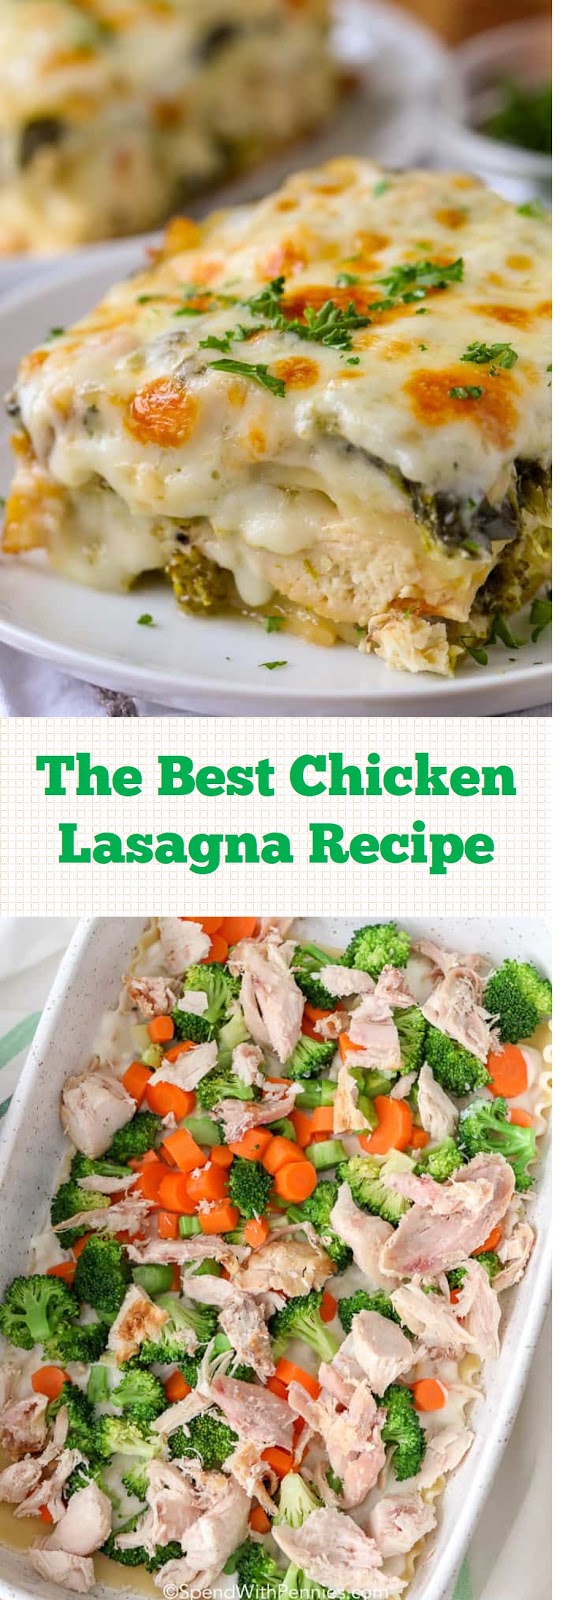 The Best Chicken Lasagna Recipe